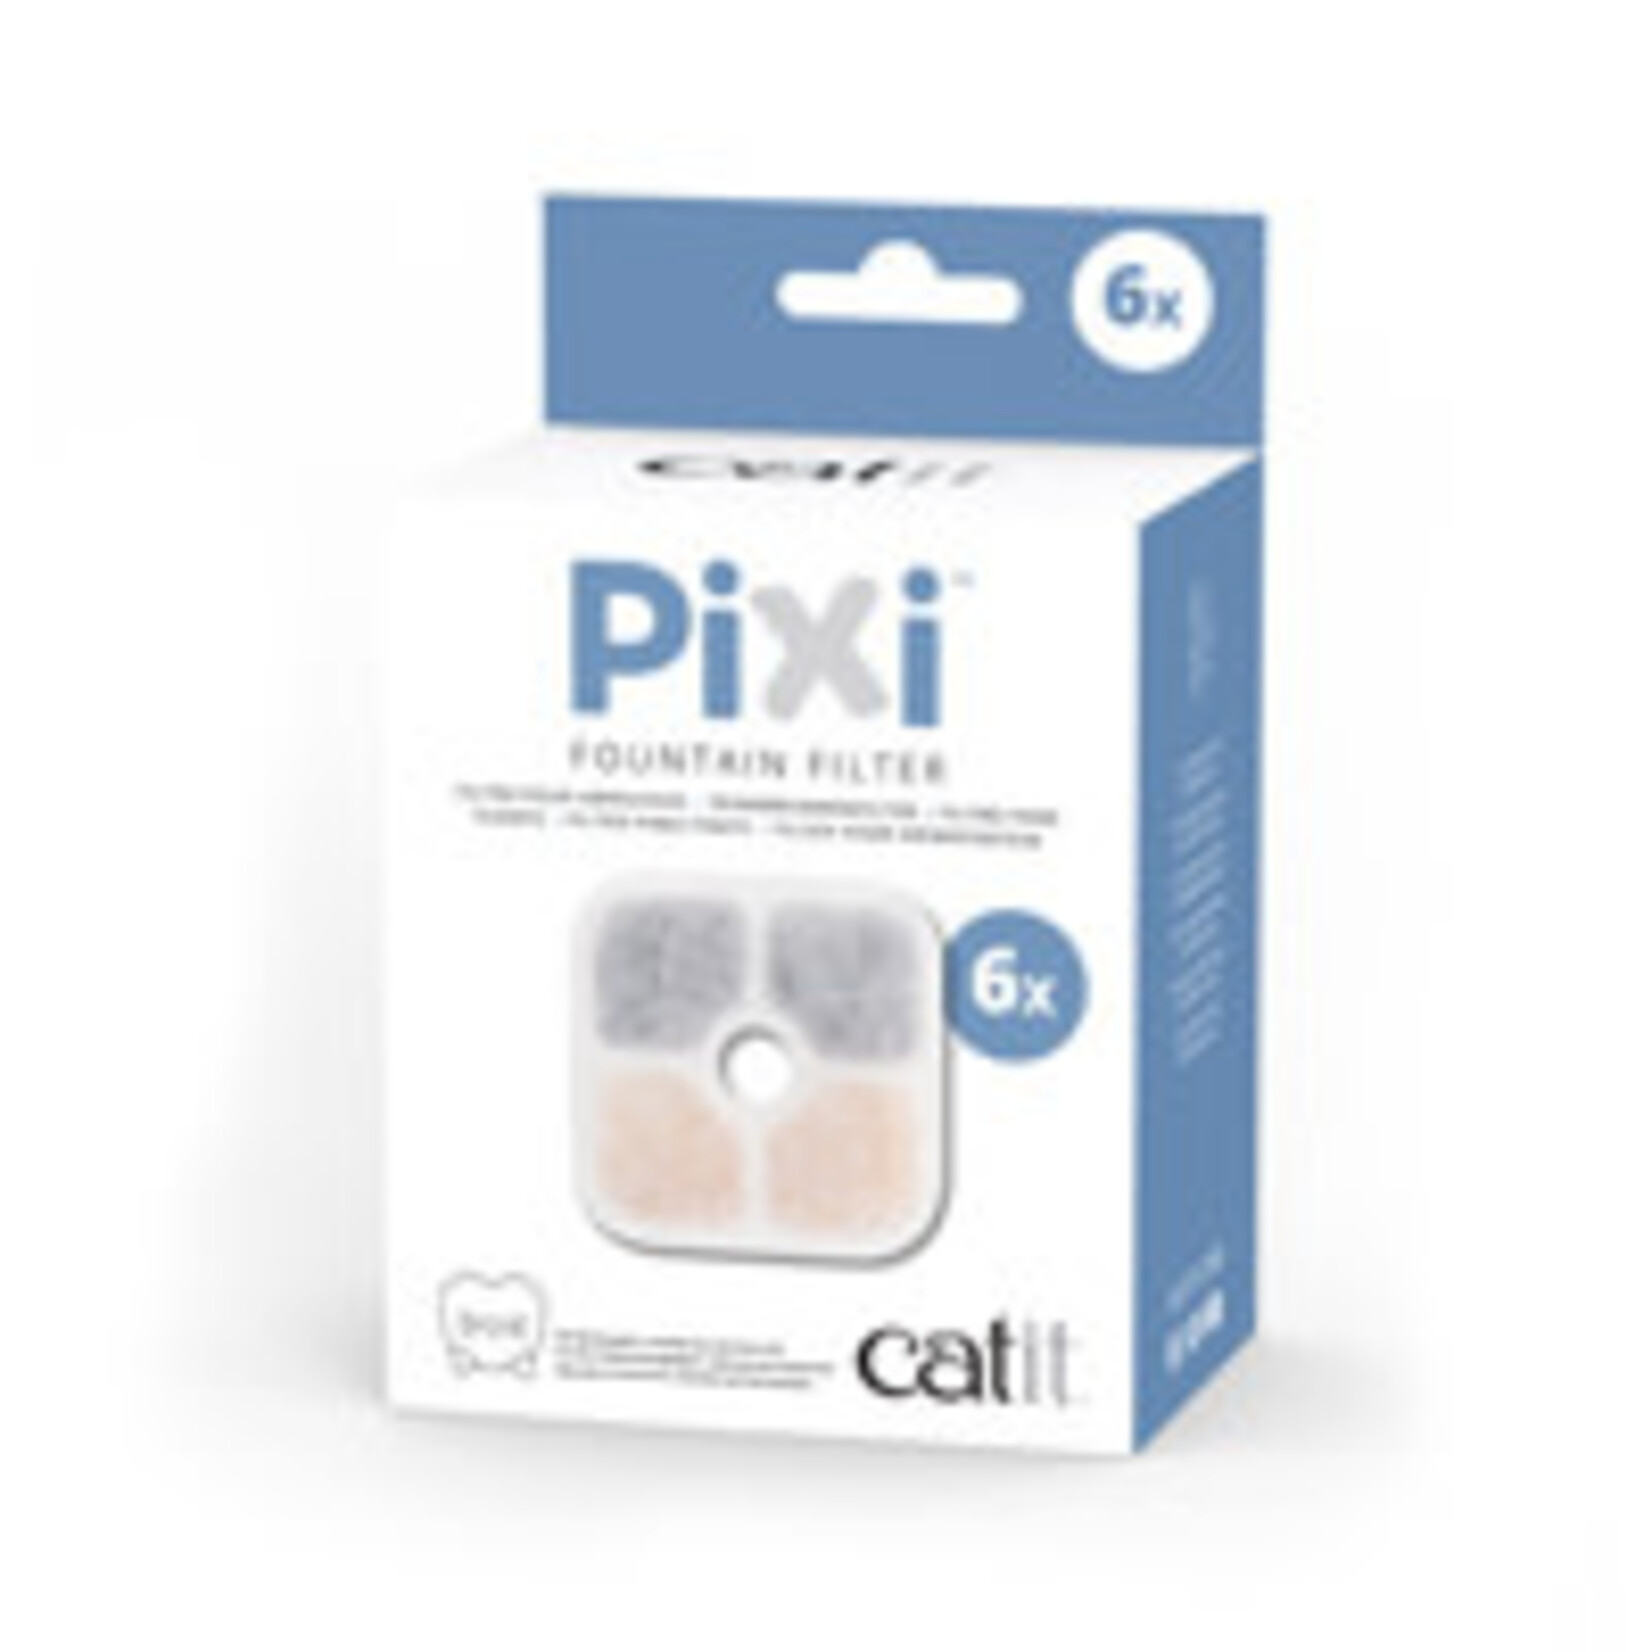 CATIT Catit PIXI Fountain Cartridges - 6 pack